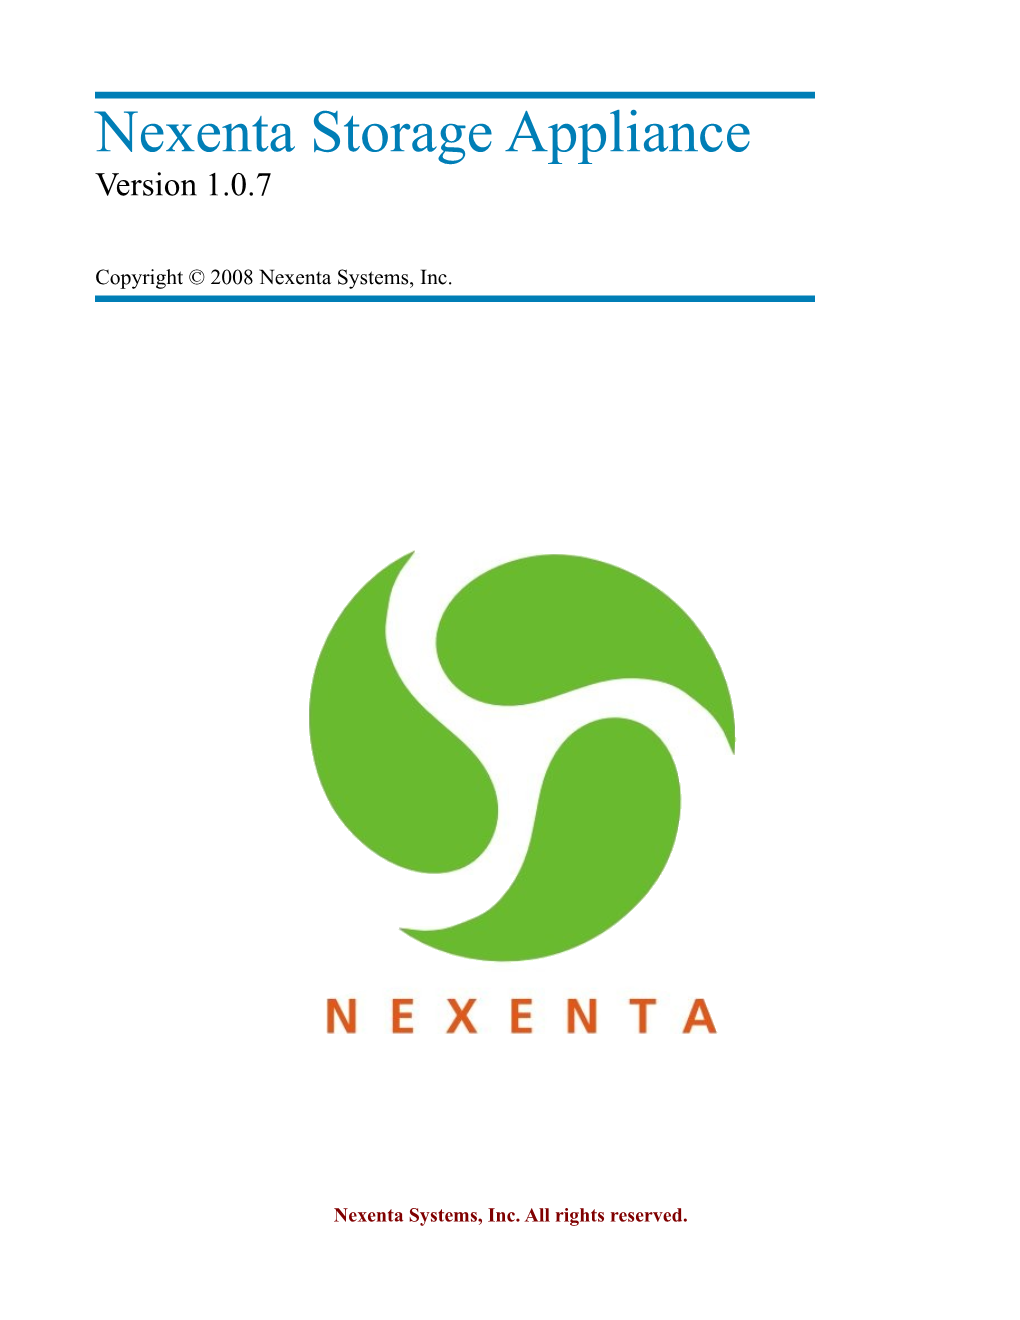 Nexenta Storage Appliance Version 1.0.7